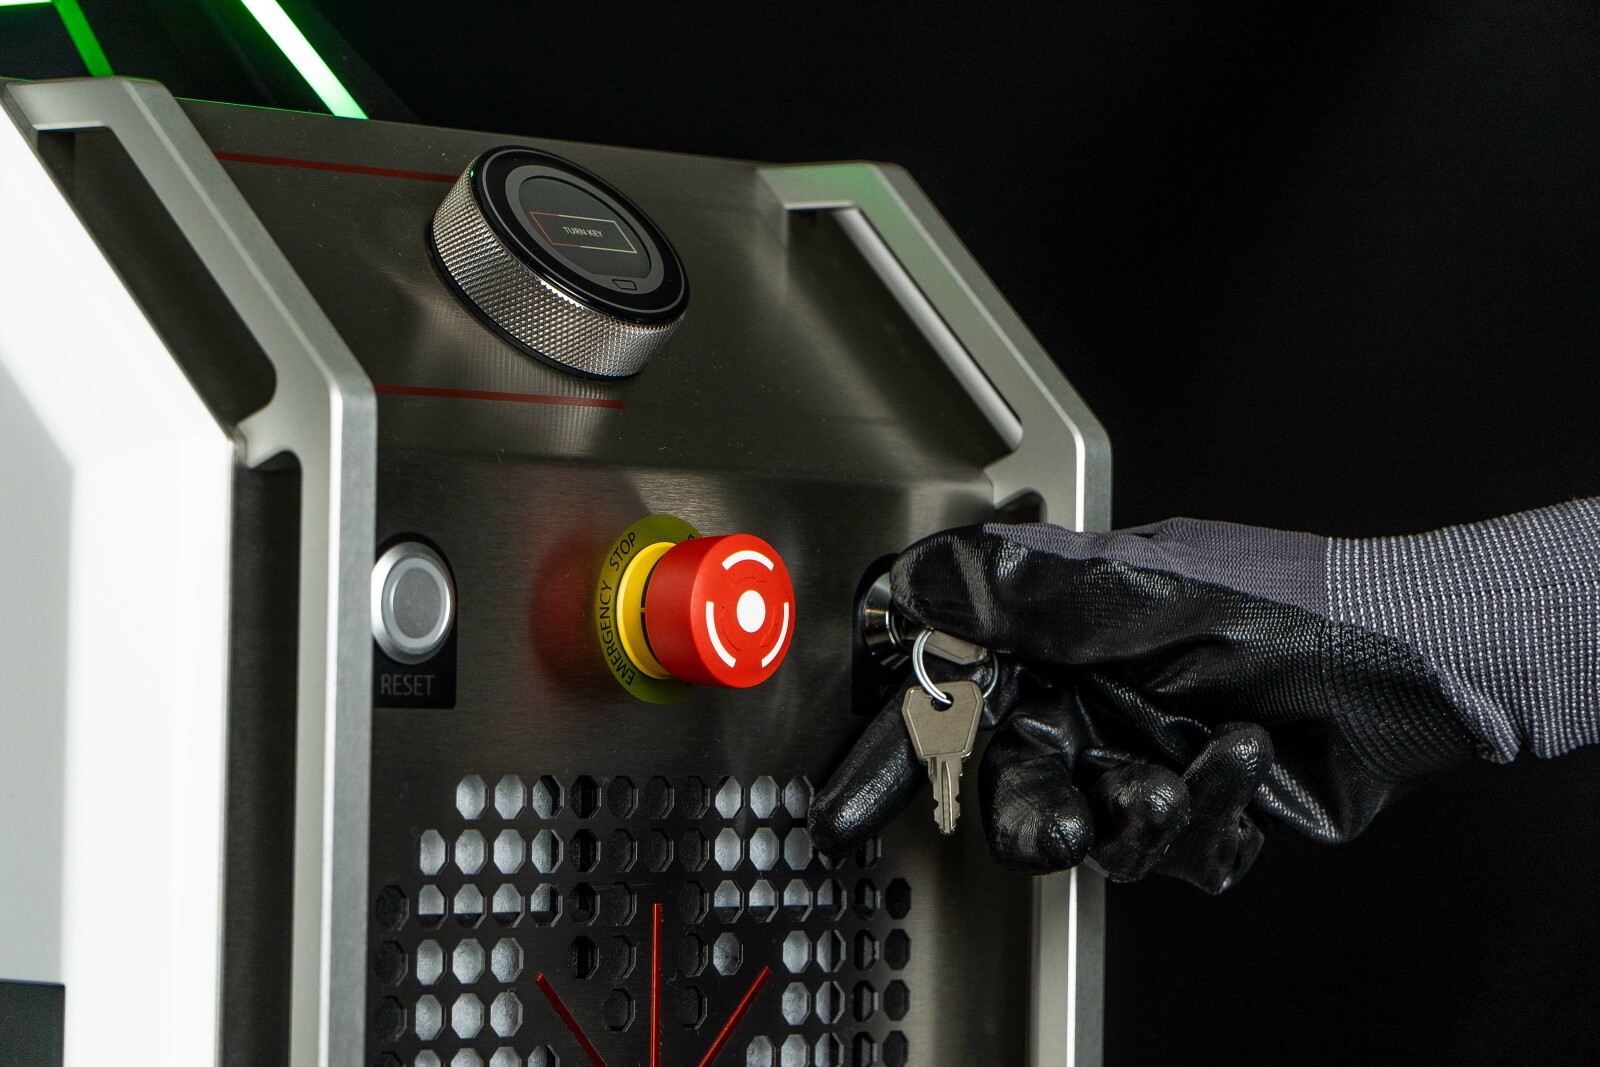 Qf - décapeur laser - p-laser - puissance 200w